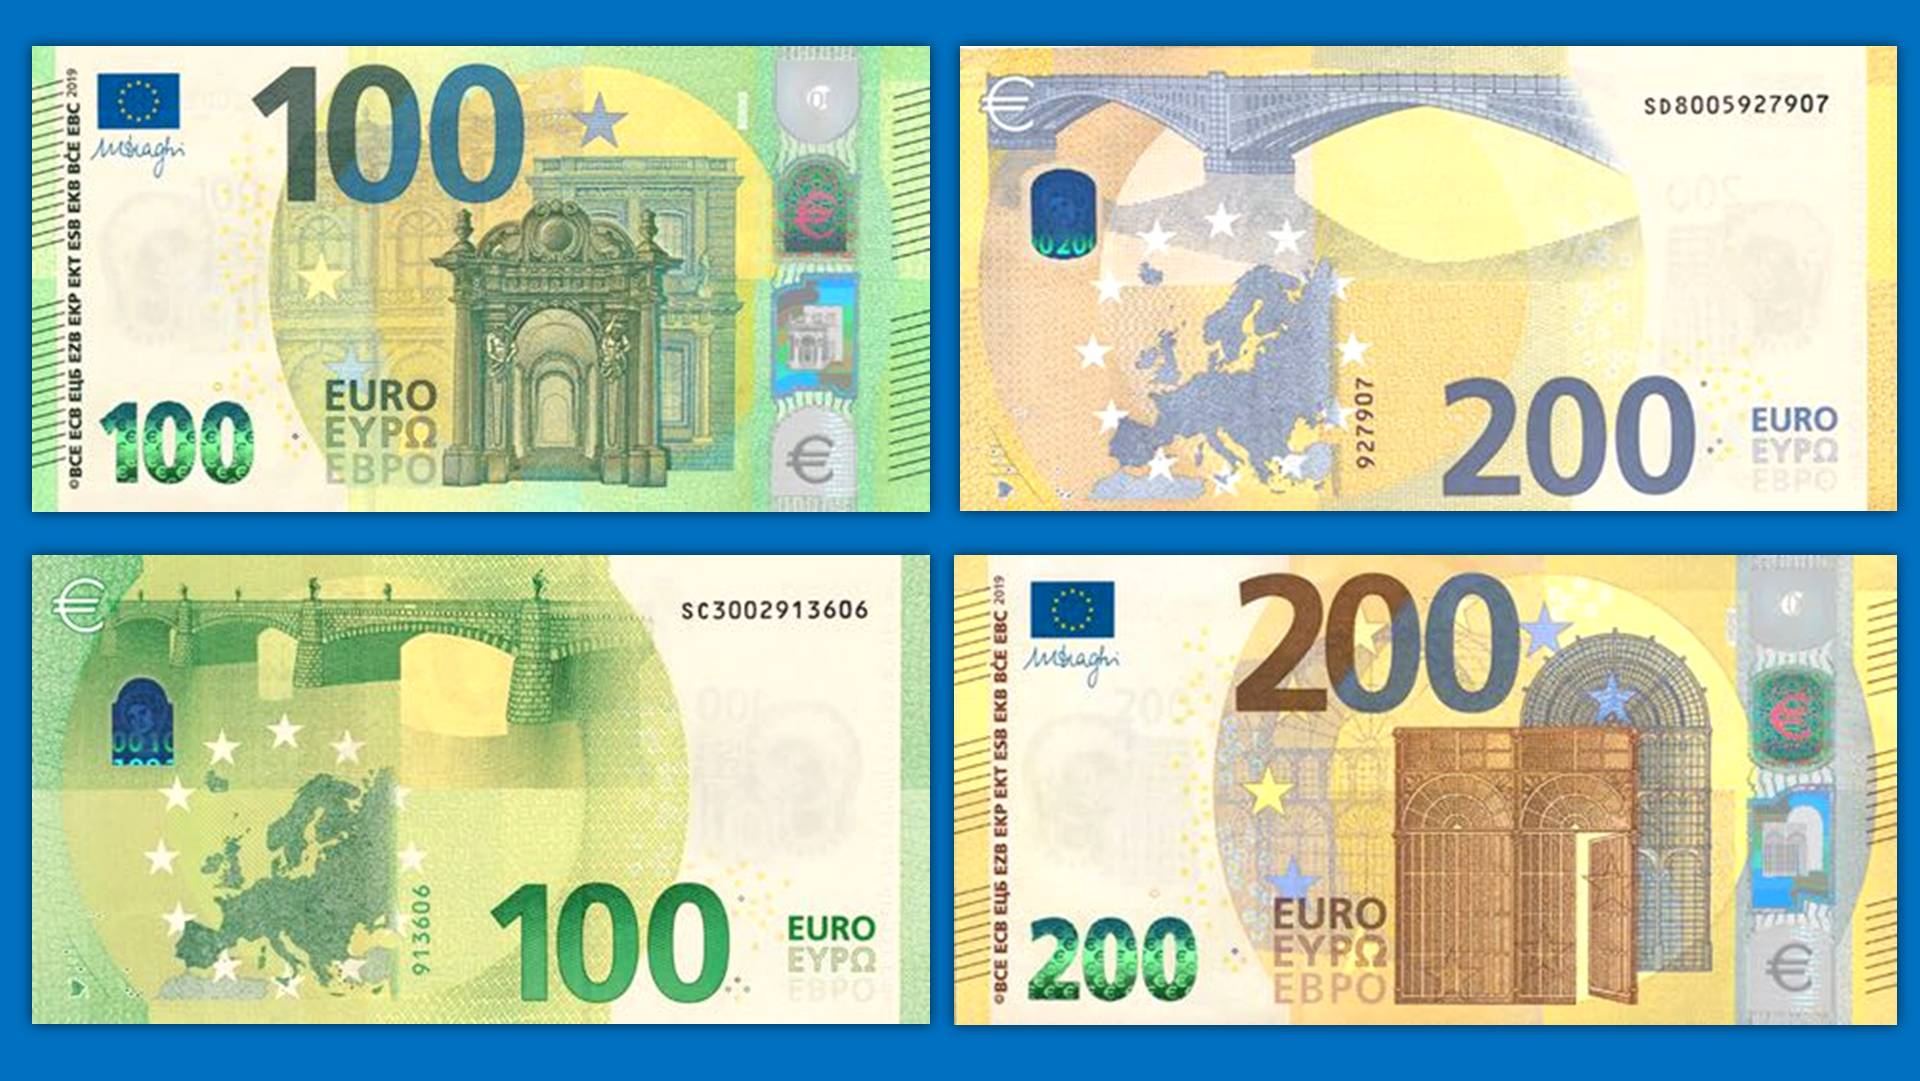 Образцы евро купюр. Евро банкноты номинал 200. Банкноты евро нового образца 200. Банкноты евро нового образца 100 евро. Купюра 100 евро нового образца.